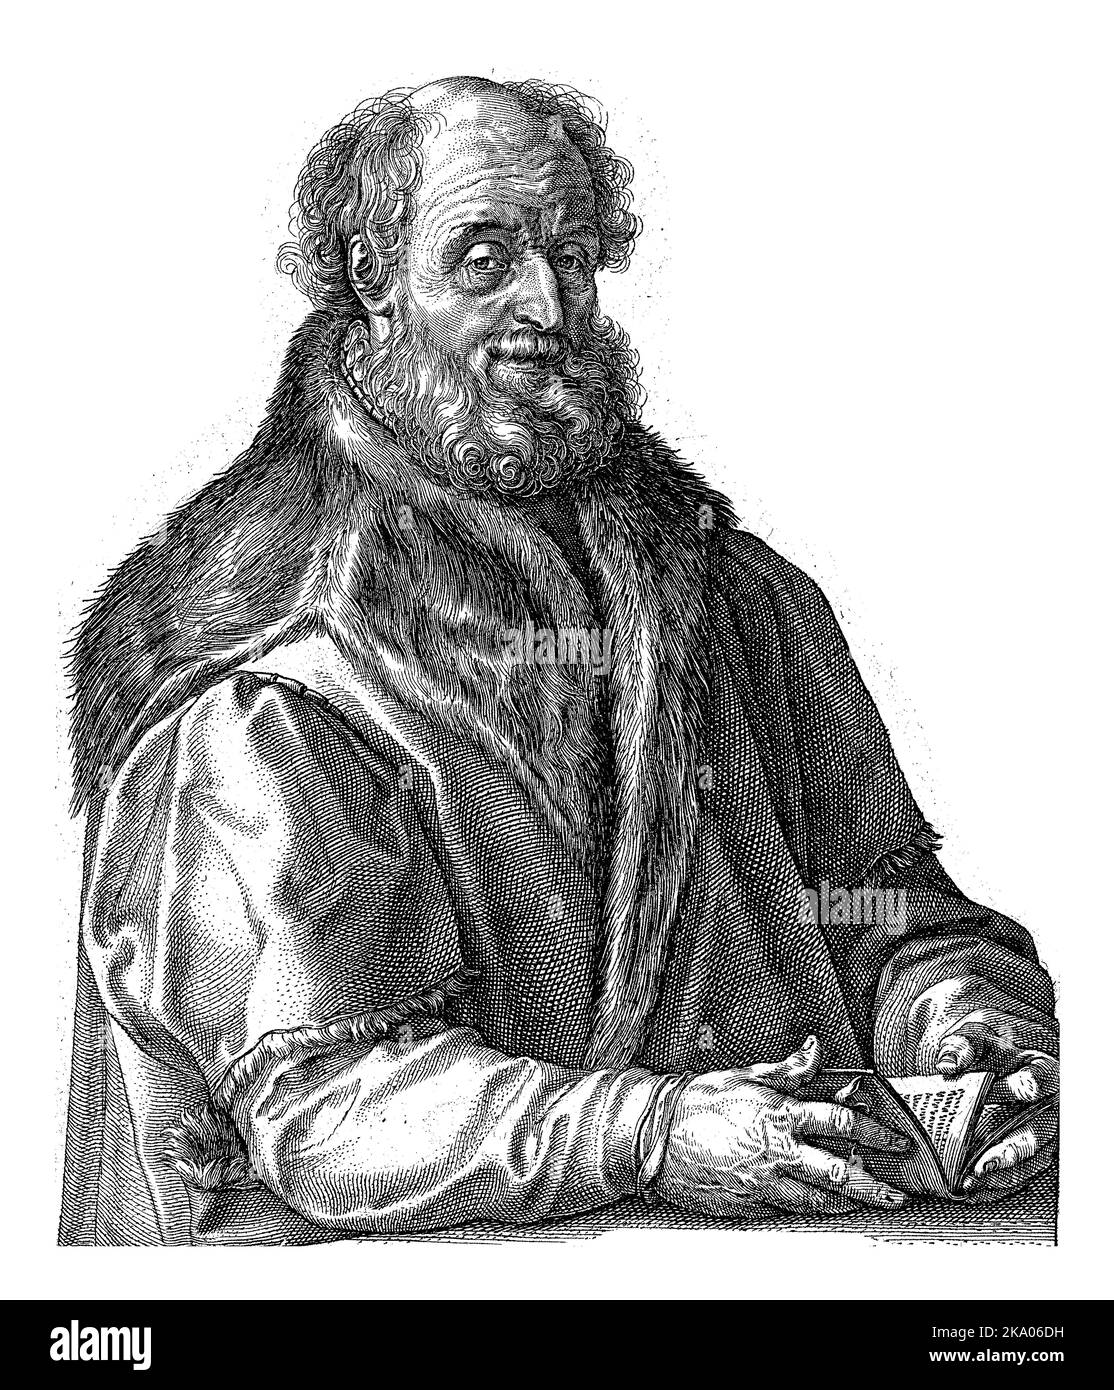 Portrait of Jan van Suren, Hendrick Goltzius, 1588 - 1590 Portrait of the printer/publisher and mayor of Haarlem, Jan van Suren (1517-1591). Stock Photo